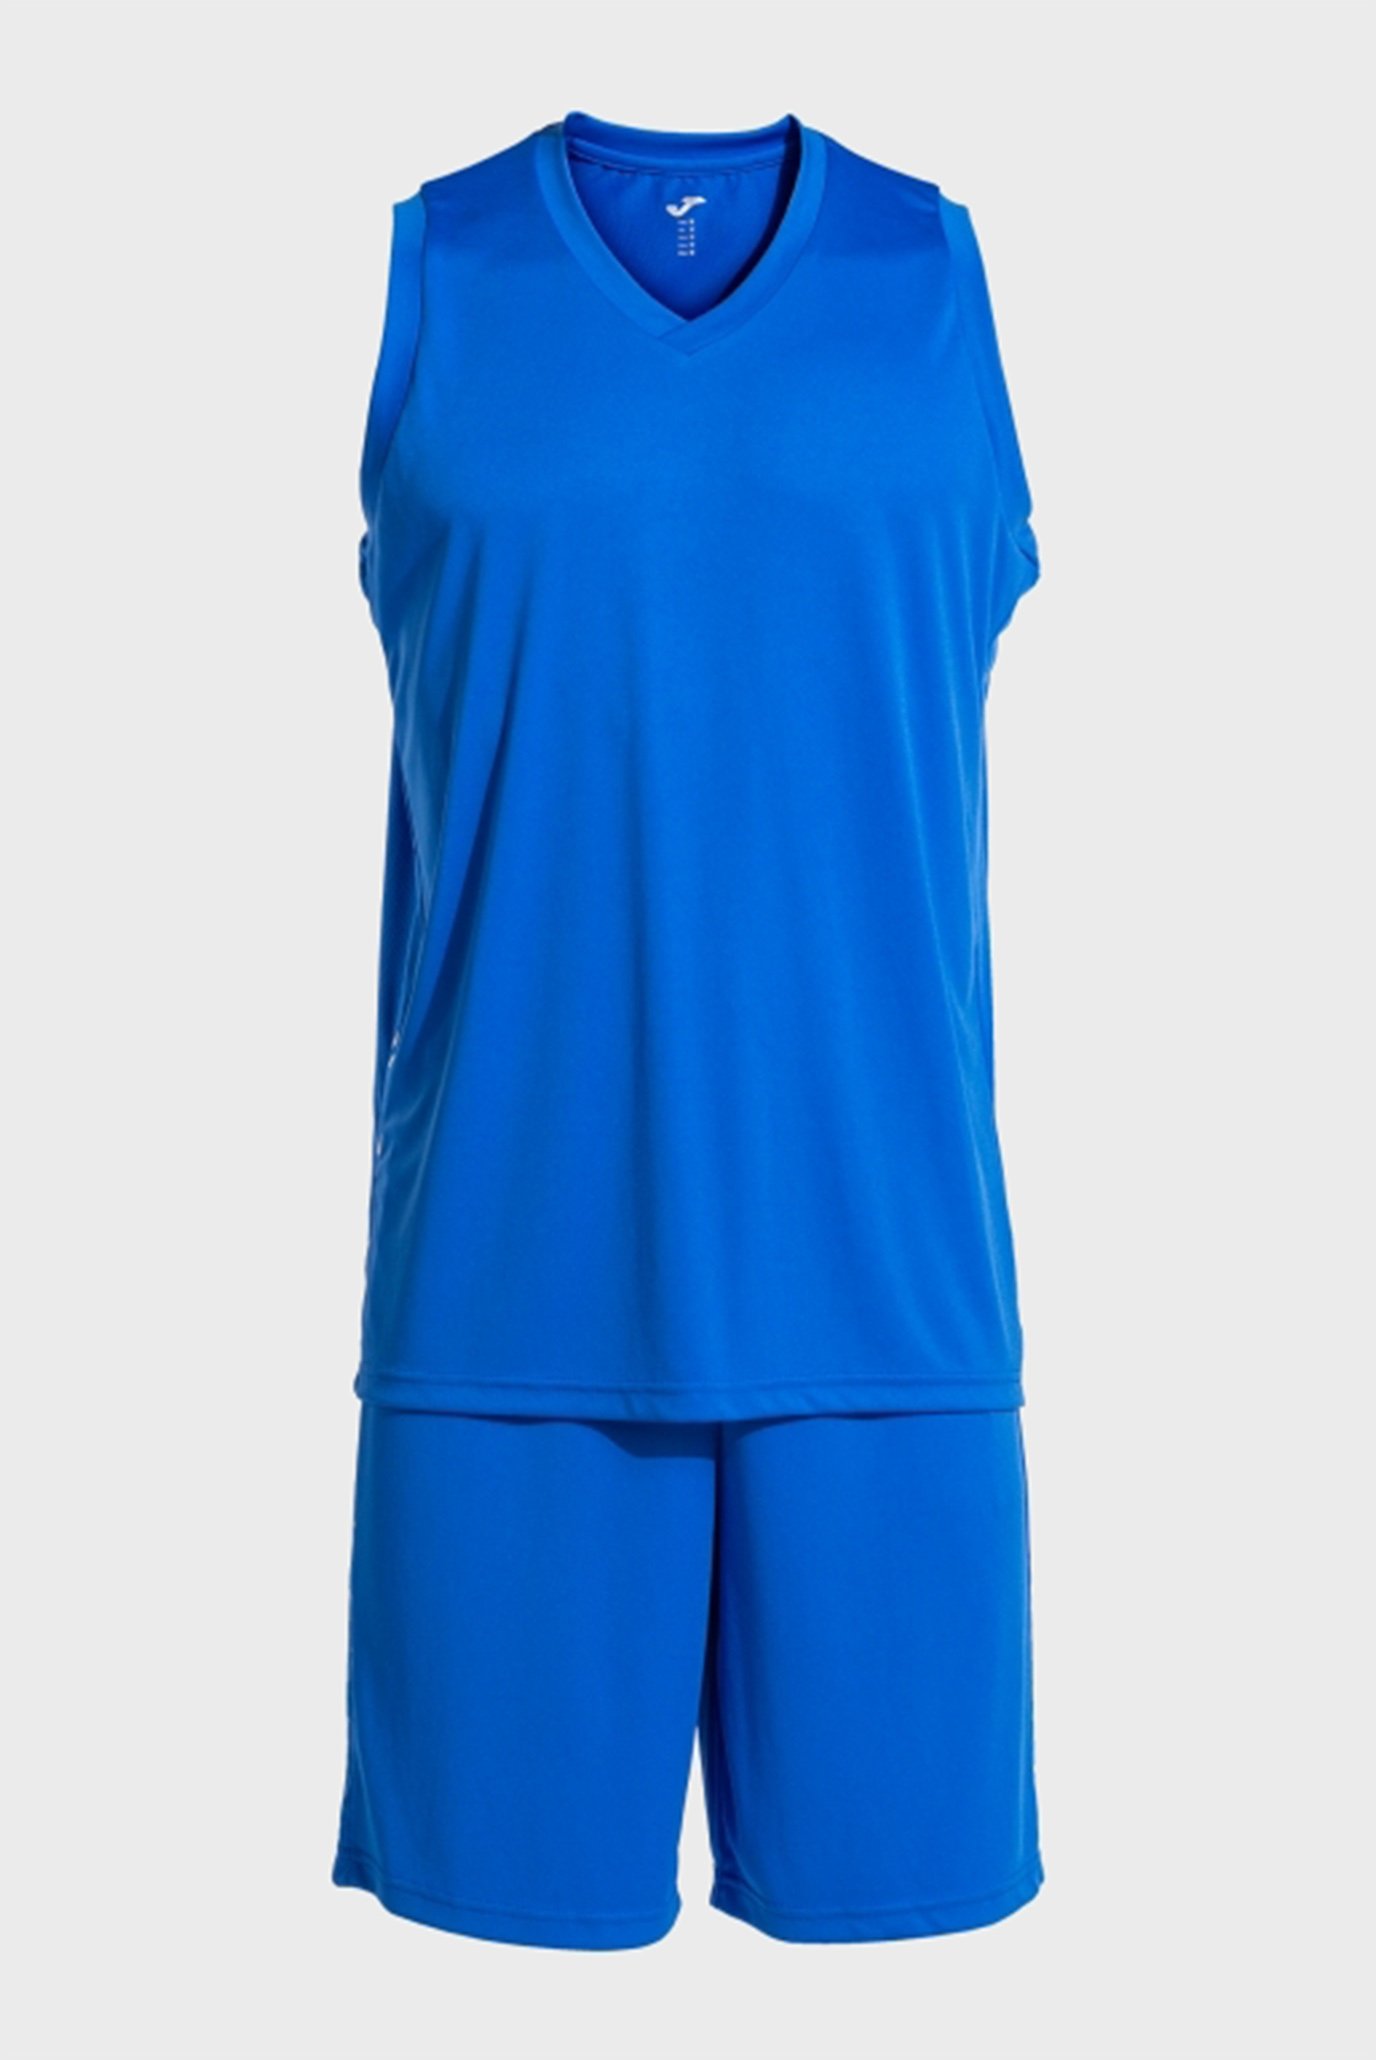 Чоловічий синій спортивний костюм (майка, шорти) 1